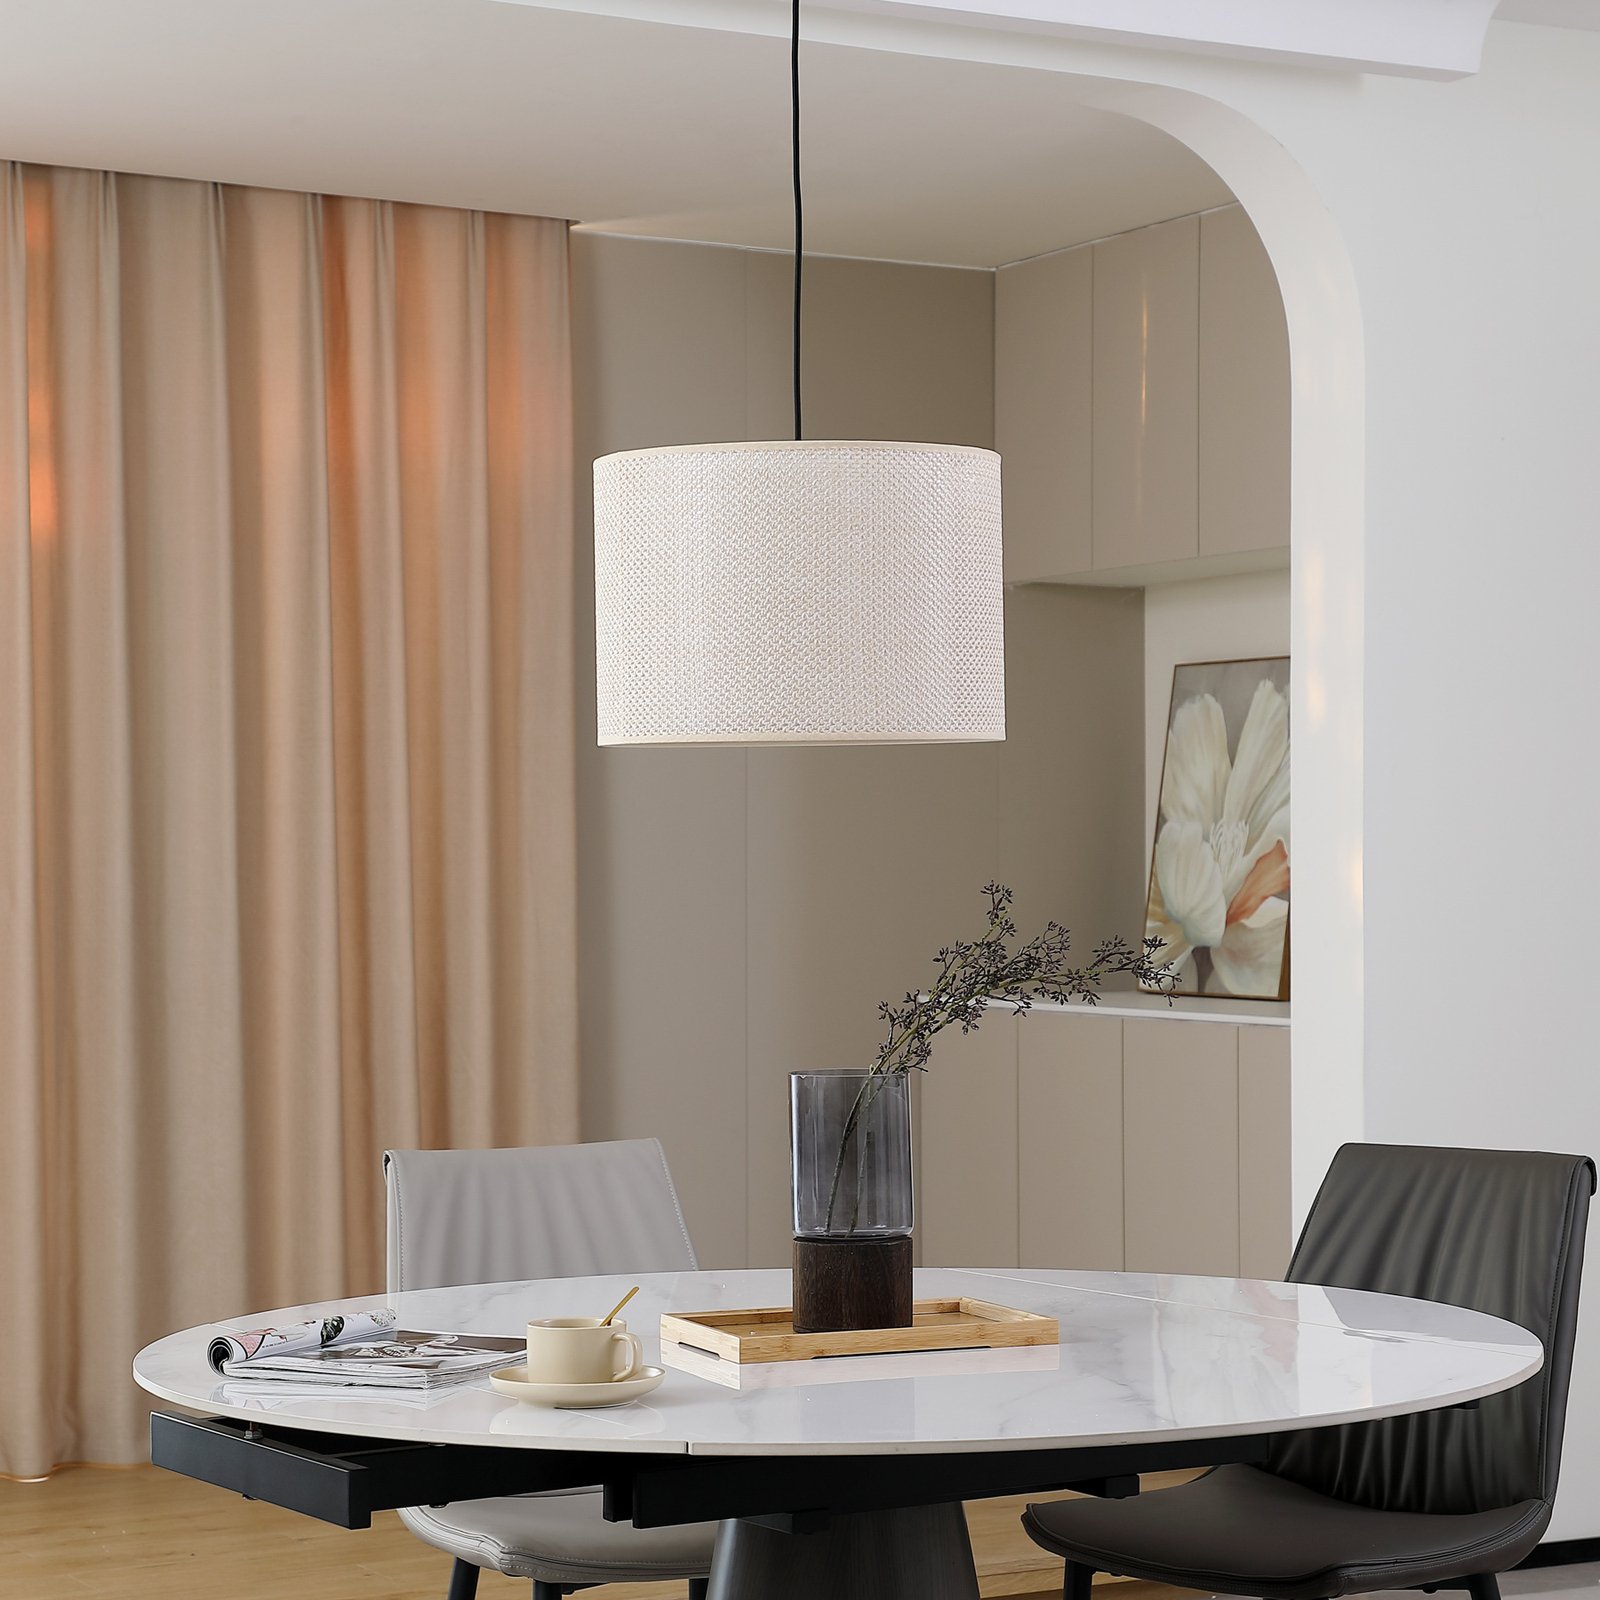 Lindby hanglamp Soula, Ø 40 cm, beige, kunststof, E27